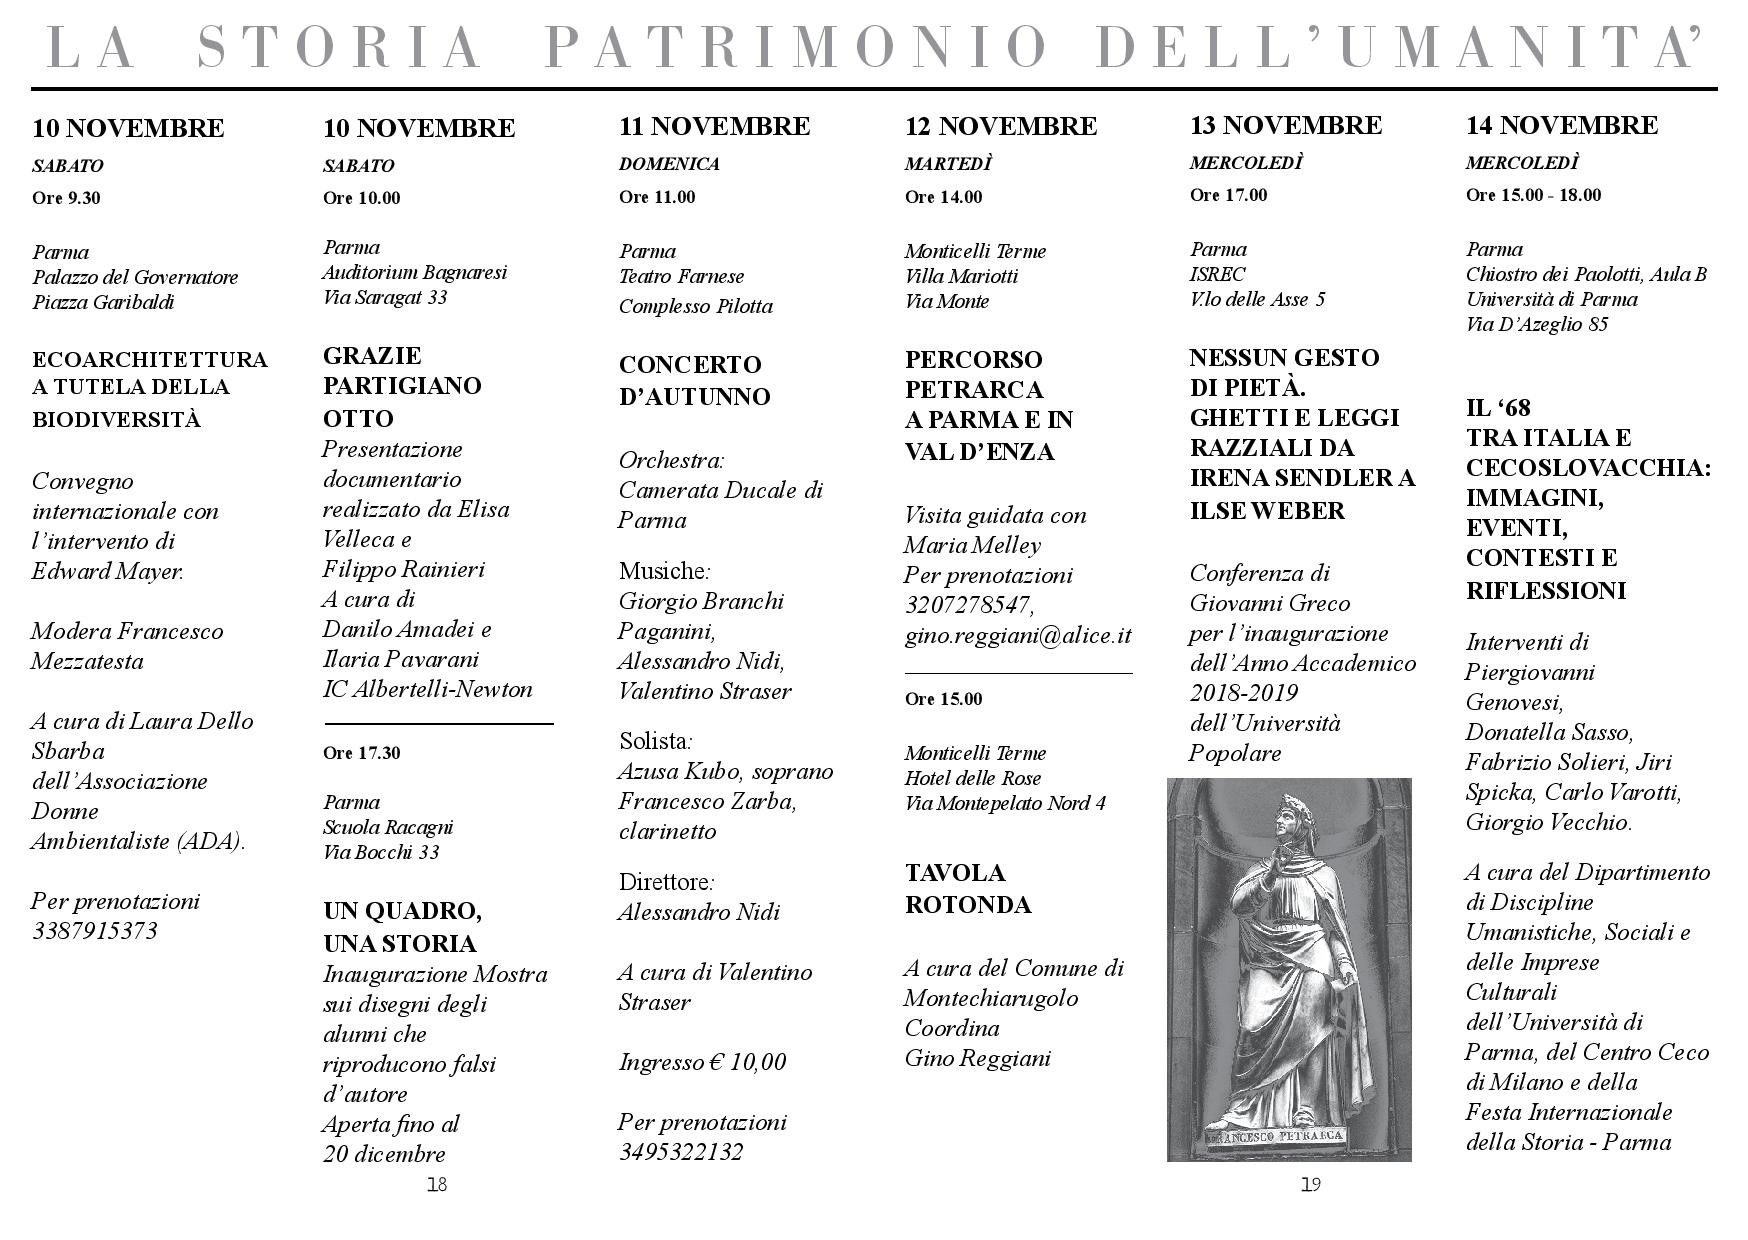 Festa Internazionale della Storia-Parma: programma dal 10 al 14 novembre